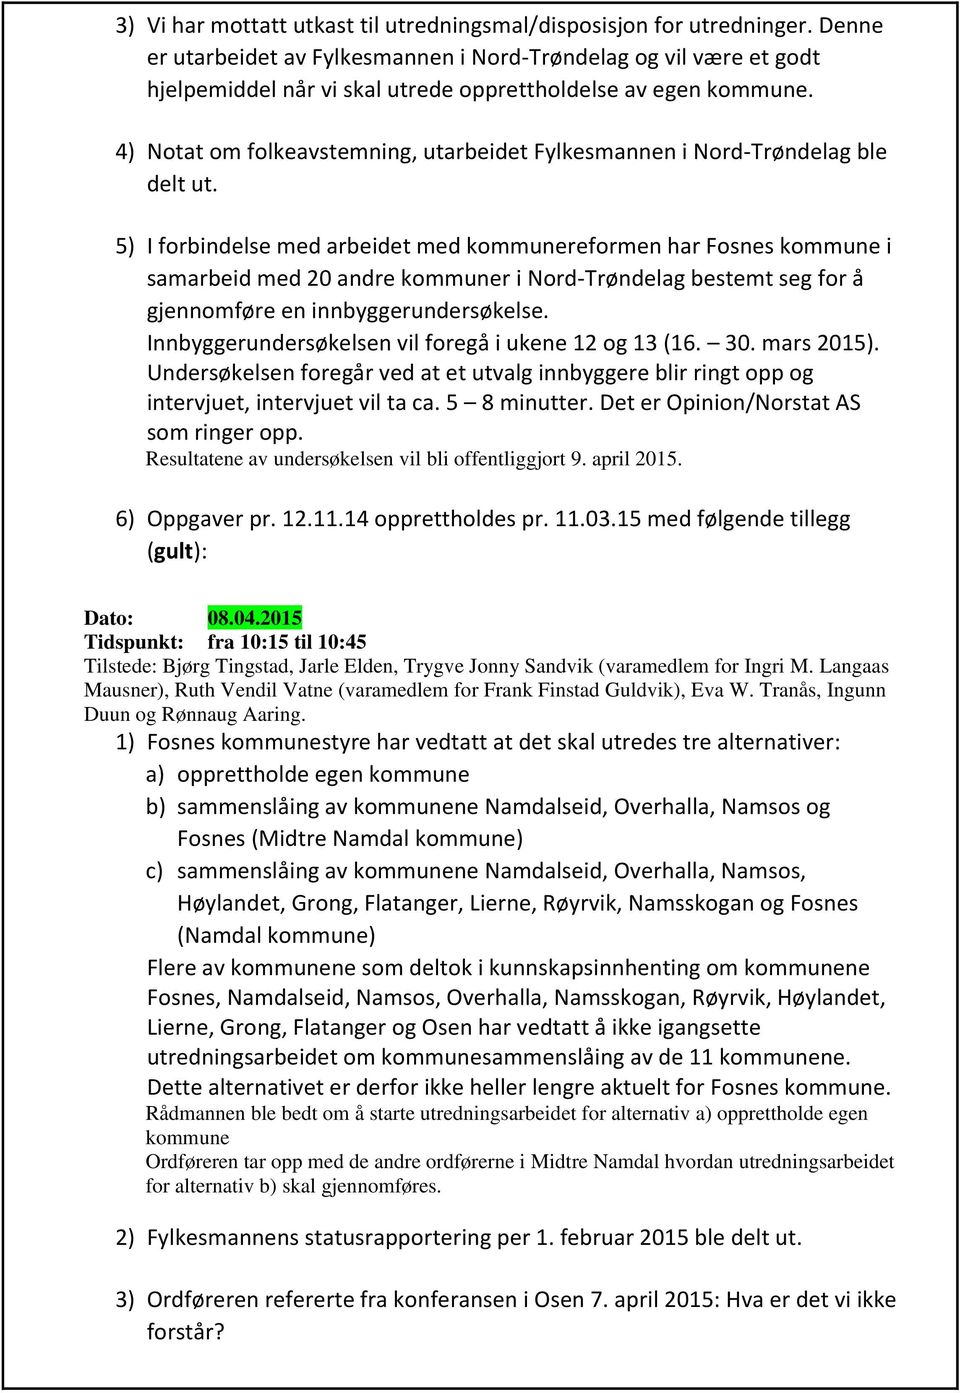 4) Notat om folkeavstemning, utarbeidet Fylkesmannen i Nord-Trøndelag ble delt ut.